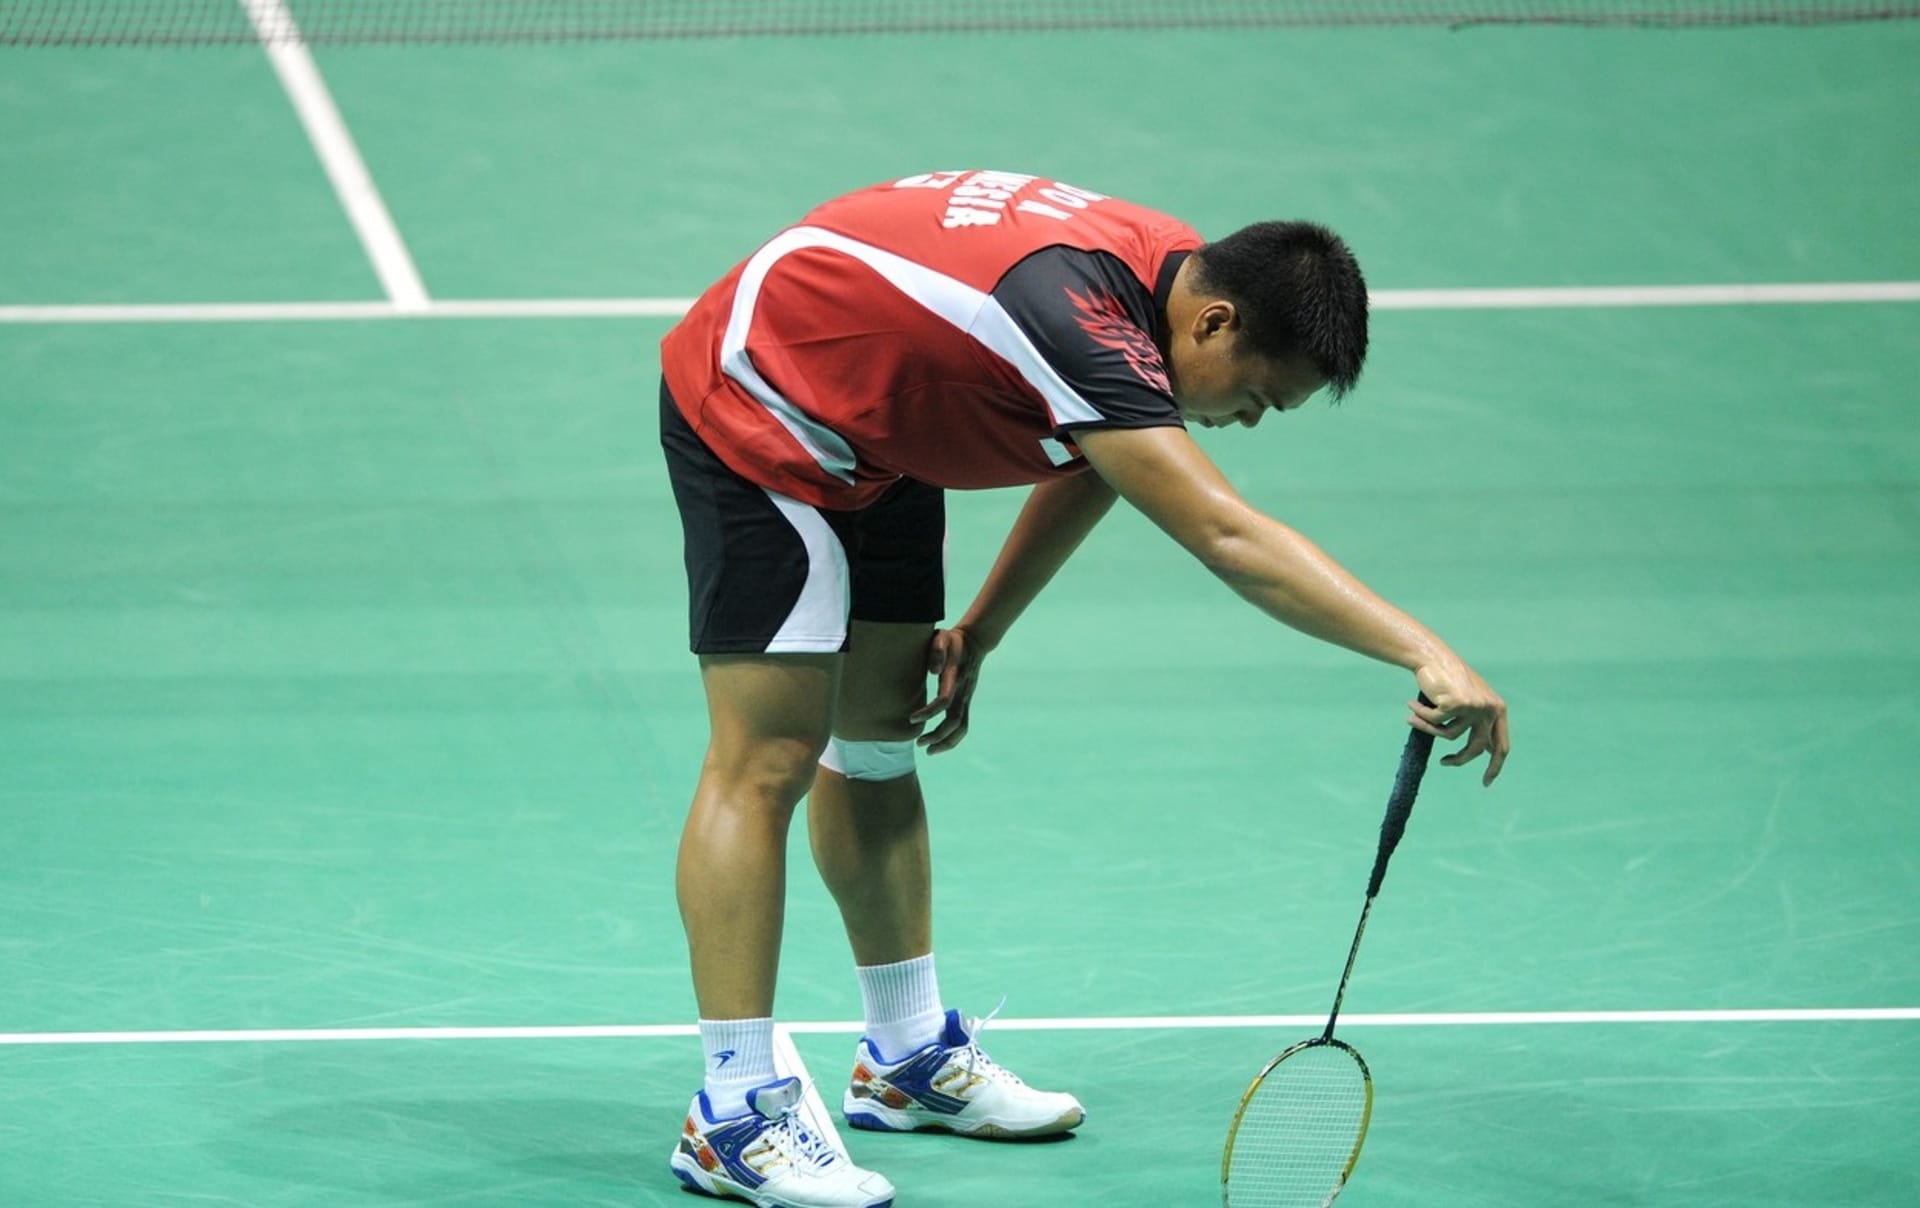 Indonéský badmintonista Markis Kido během zápasu zkolaboval. Lékaři mu už život nezachránili.